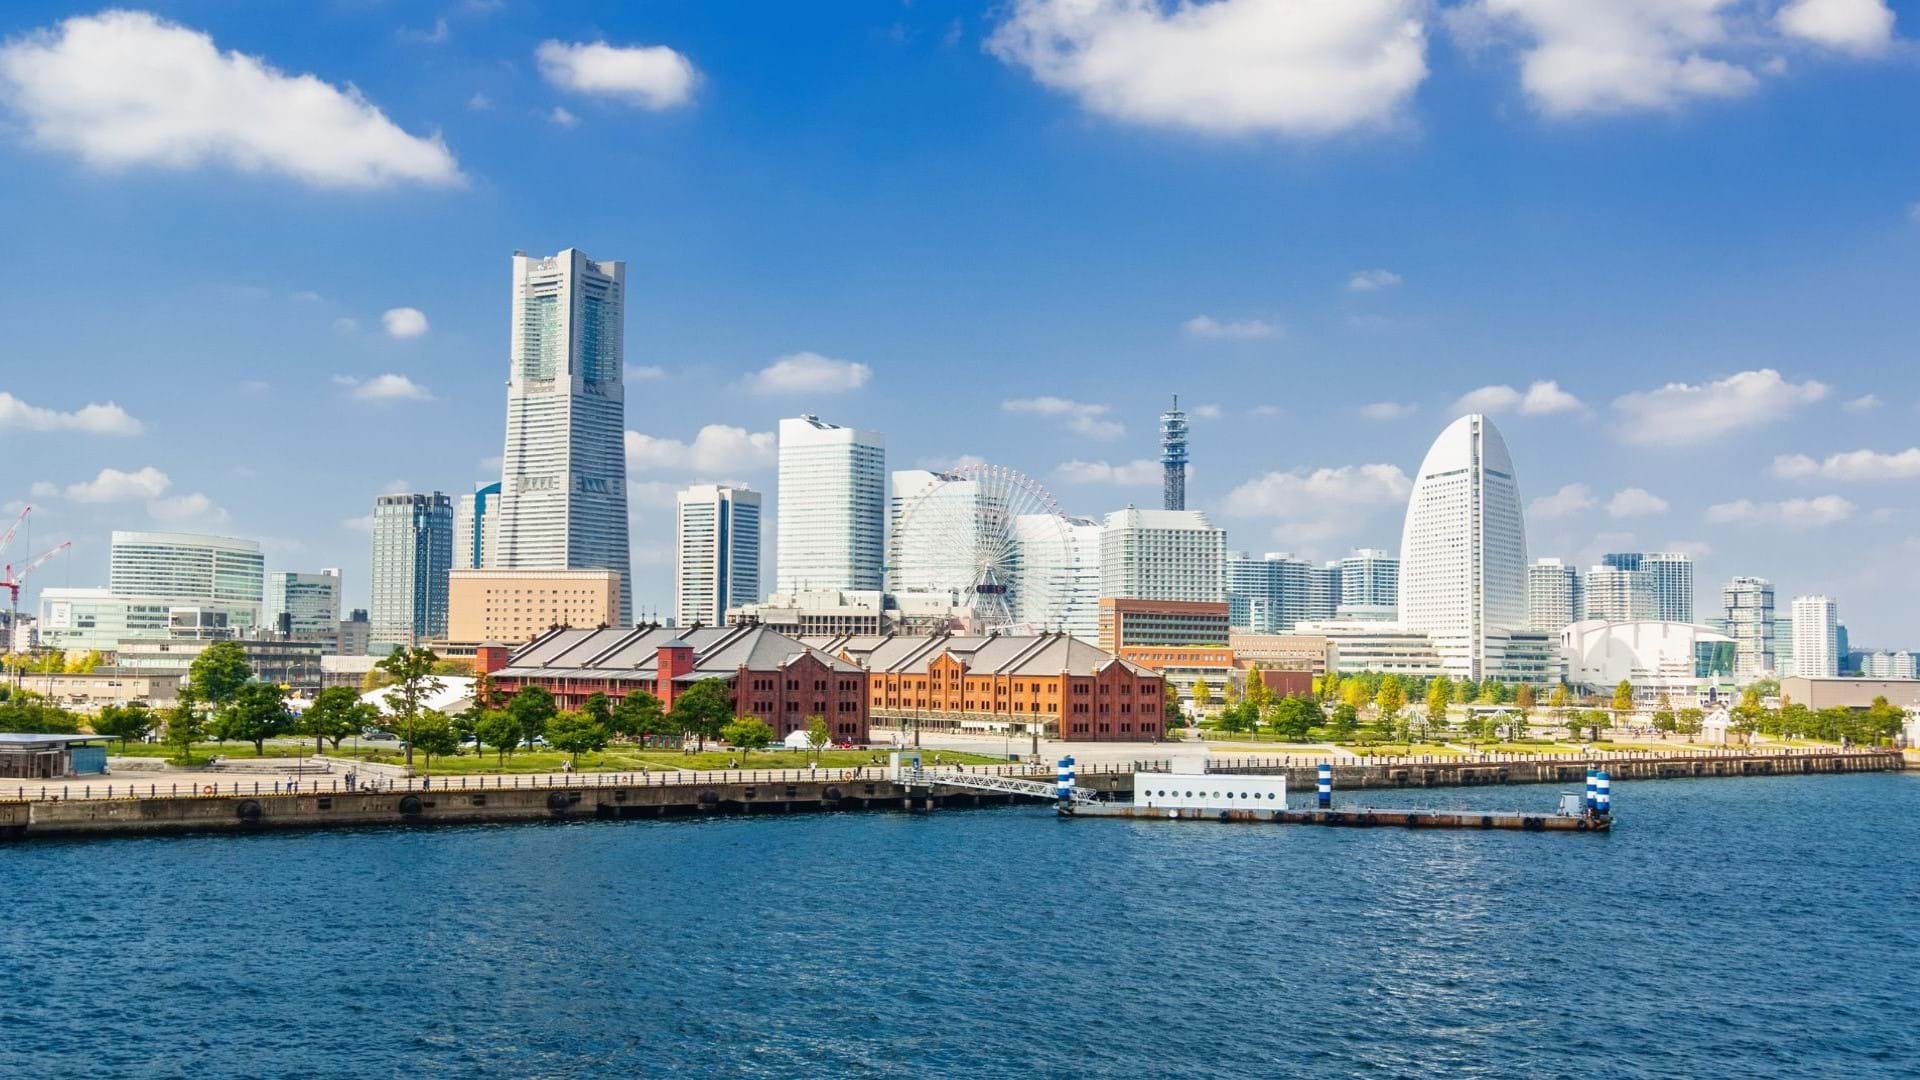 Jokohama (Yokohama) je drugi najveći grad u Japanu, smešten u prefekturi Kanagawa, na obali Tihog okeana. U njemu se nalazi Chinatown, jedna od najvećih i najstarijih kineskih četvrti u svetu.